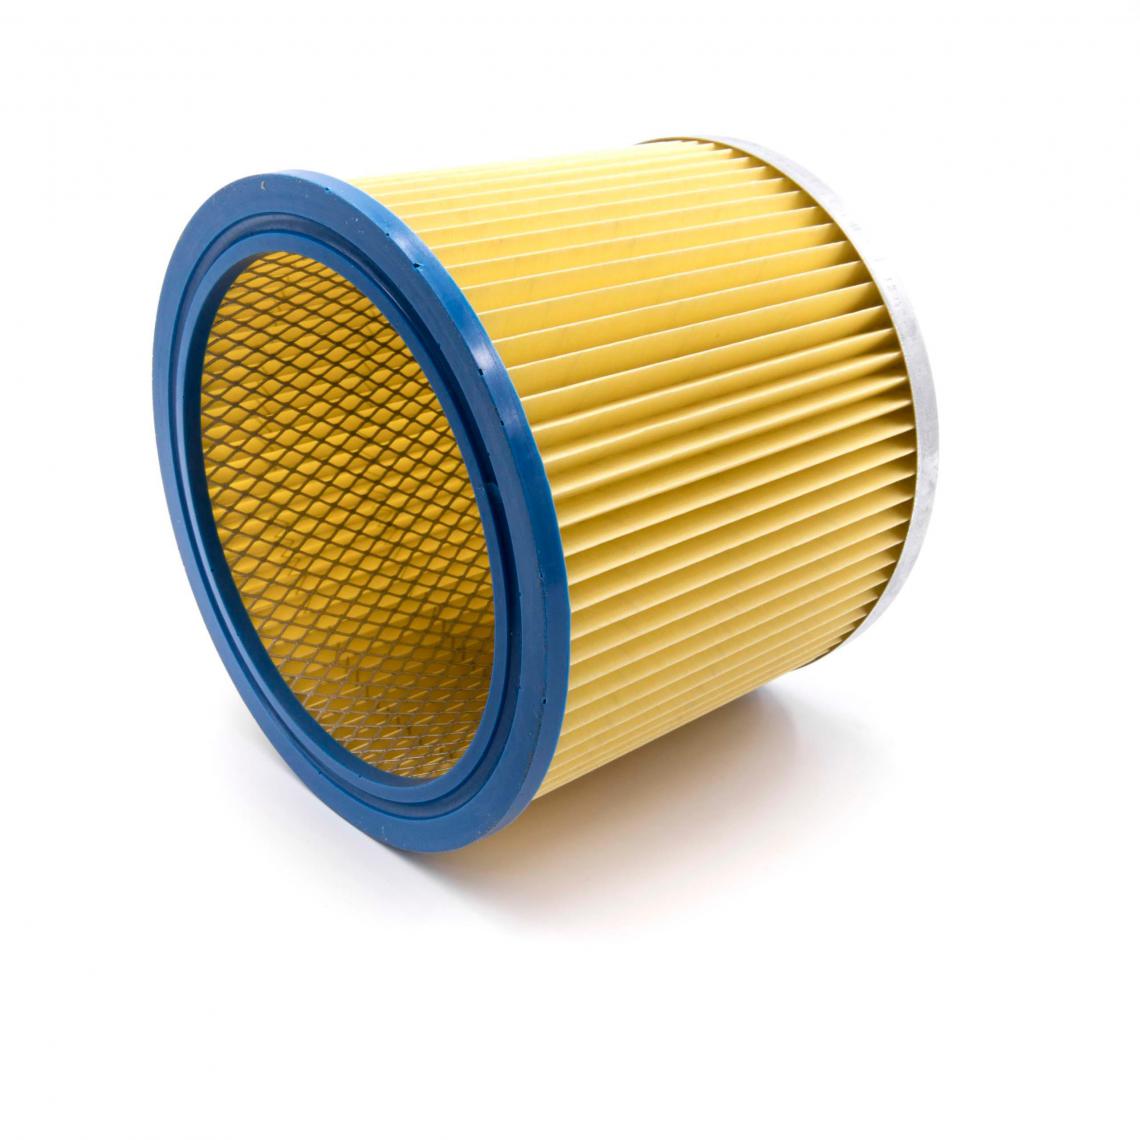 Vhbw - vhbw fitre rond filtre à lamelles pour aspirateur multifonction compatible avec Parkside PNTS 1500 (A1/B1/B2), 30/4(E/S), 30/6(E/S), 30/7(E/S) - Cordons d'alimentation